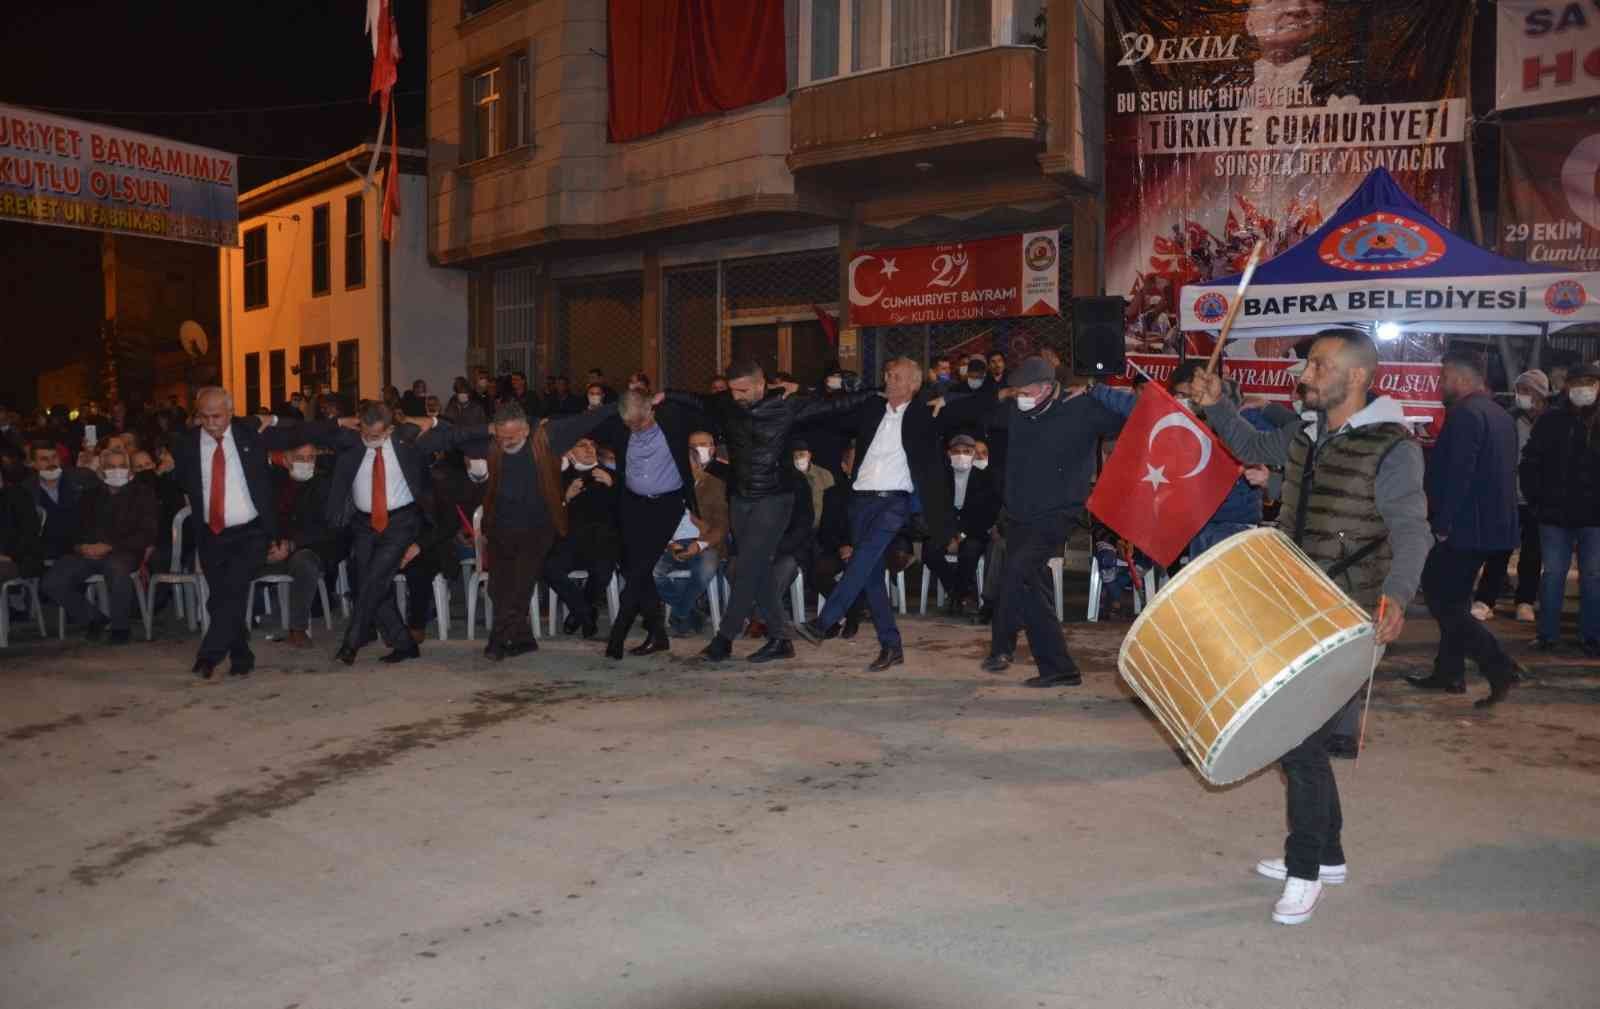 Gazi Paşalılar davul-zurna ile ’Cumhuriyet’i kutladı #samsun